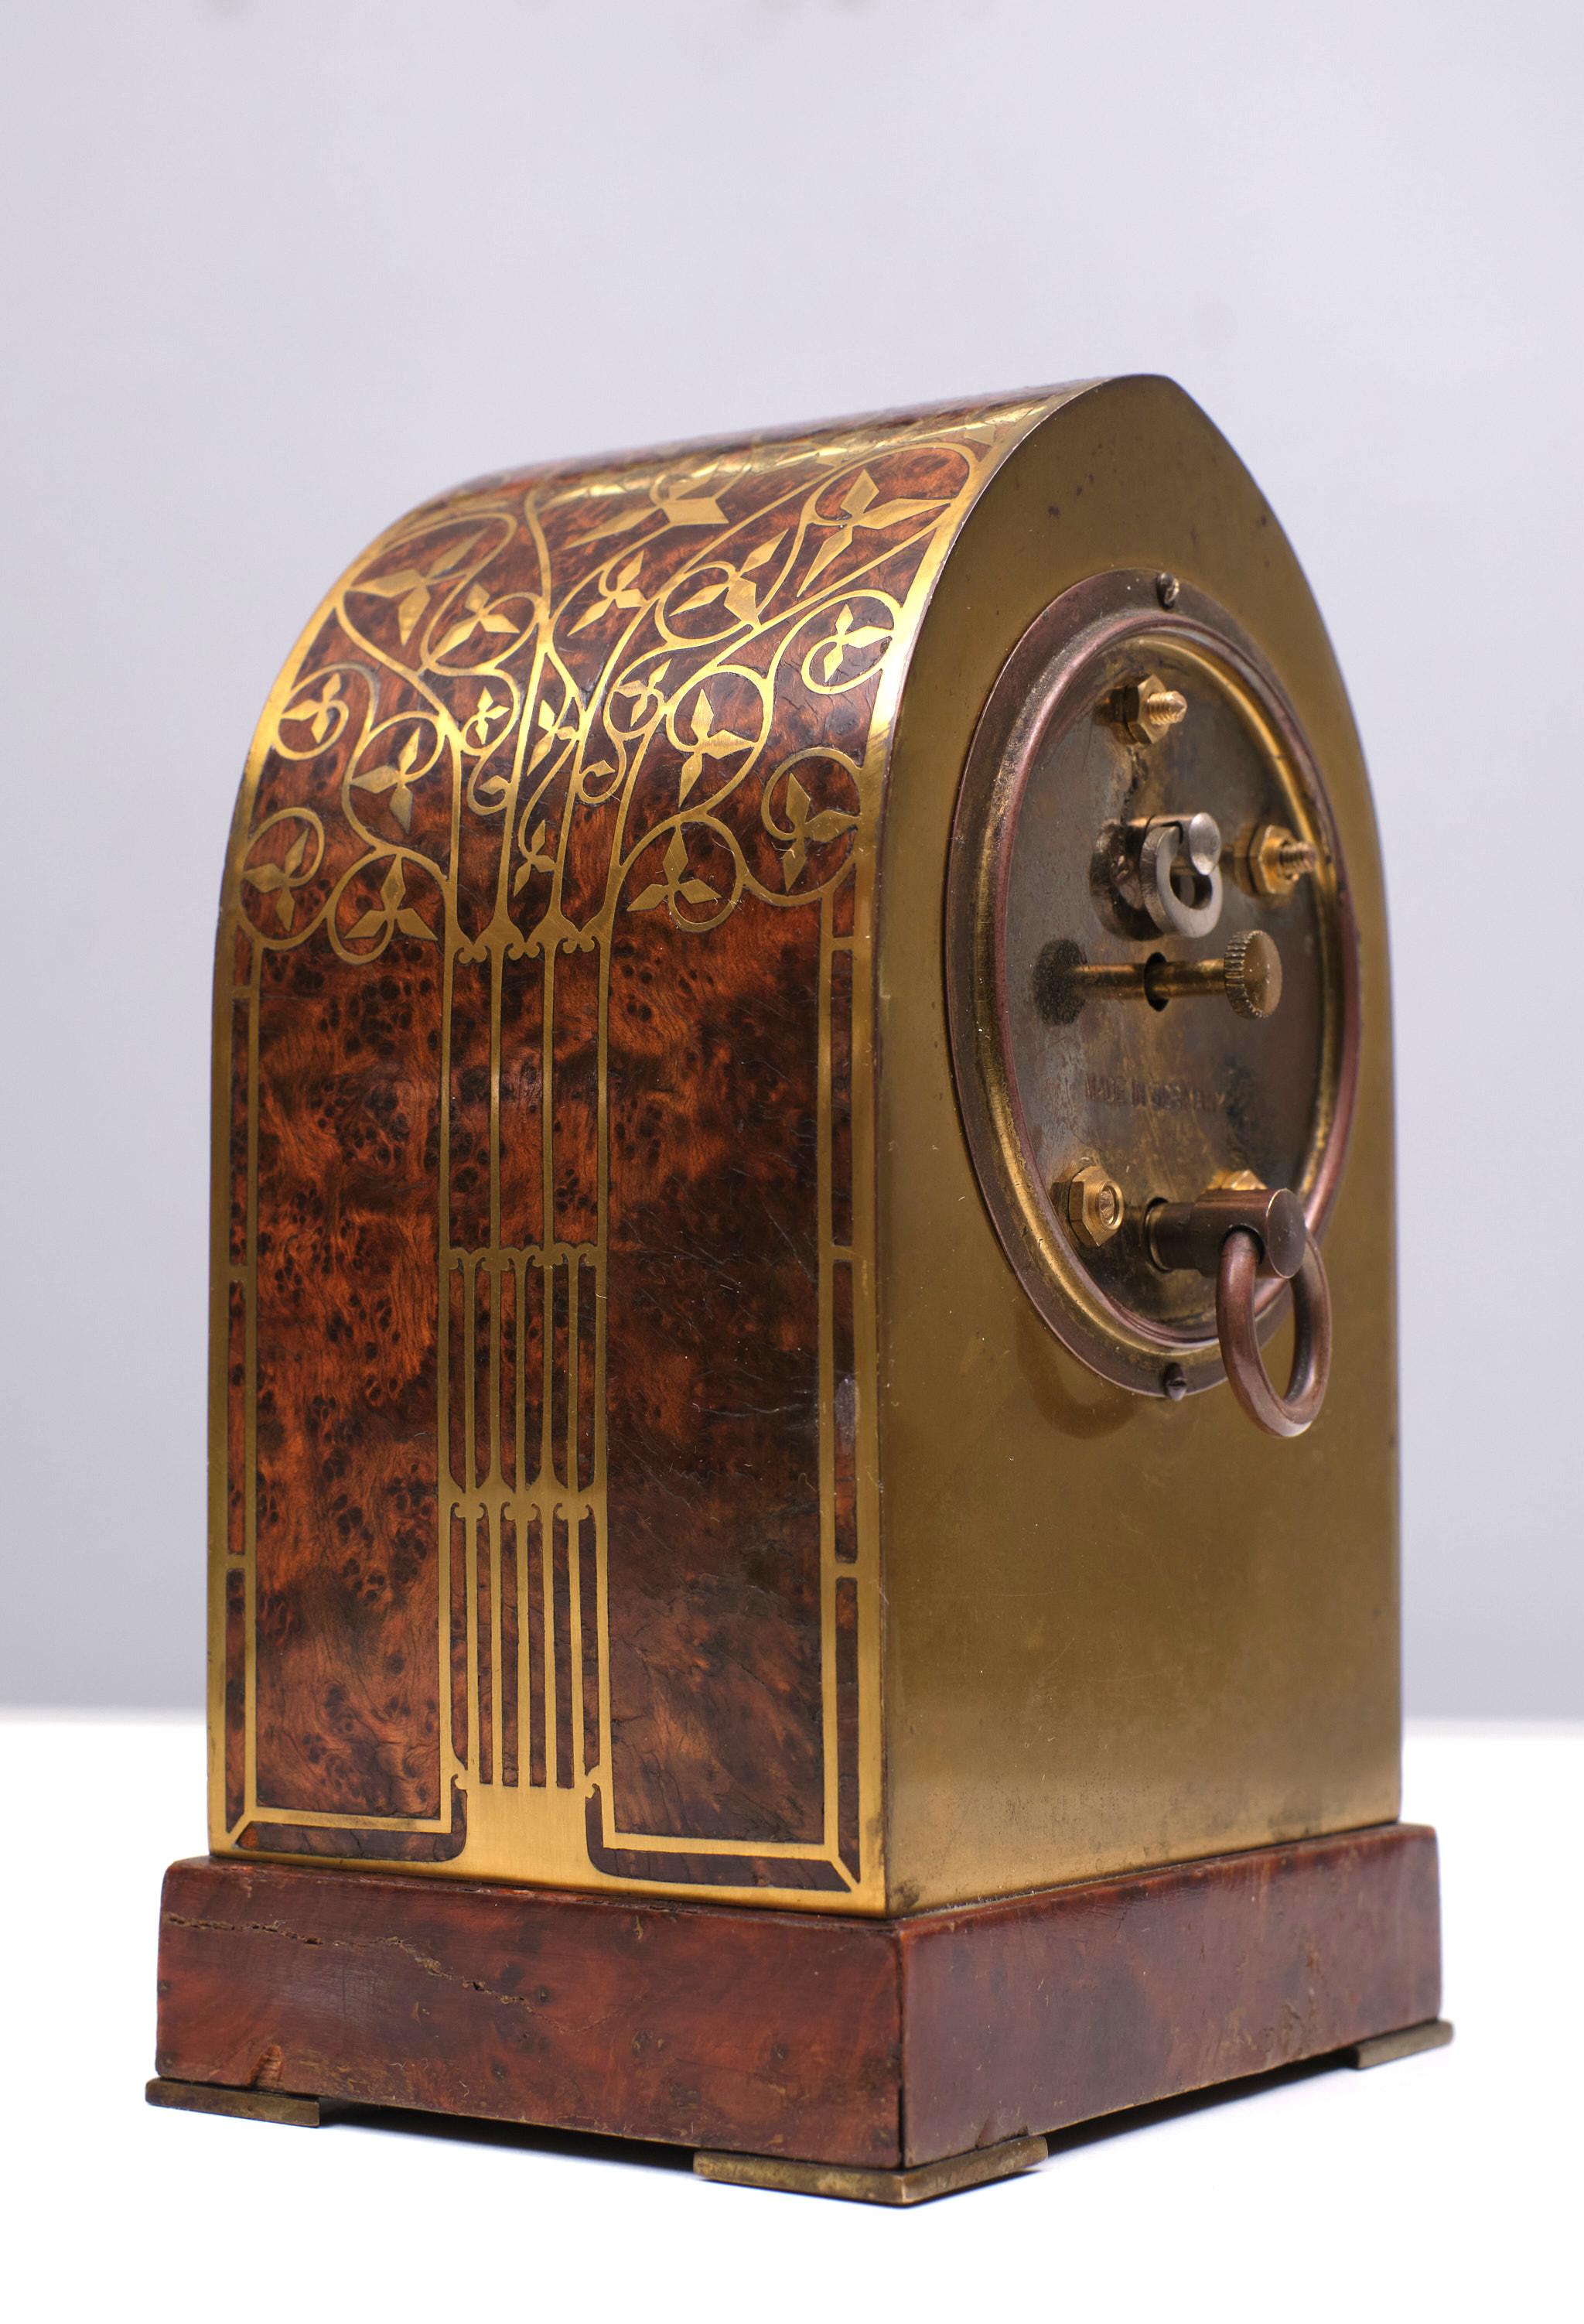 Erhard & Söhne  Jugendstil  Table Clock   1910  Austria In Good Condition For Sale In Den Haag, NL